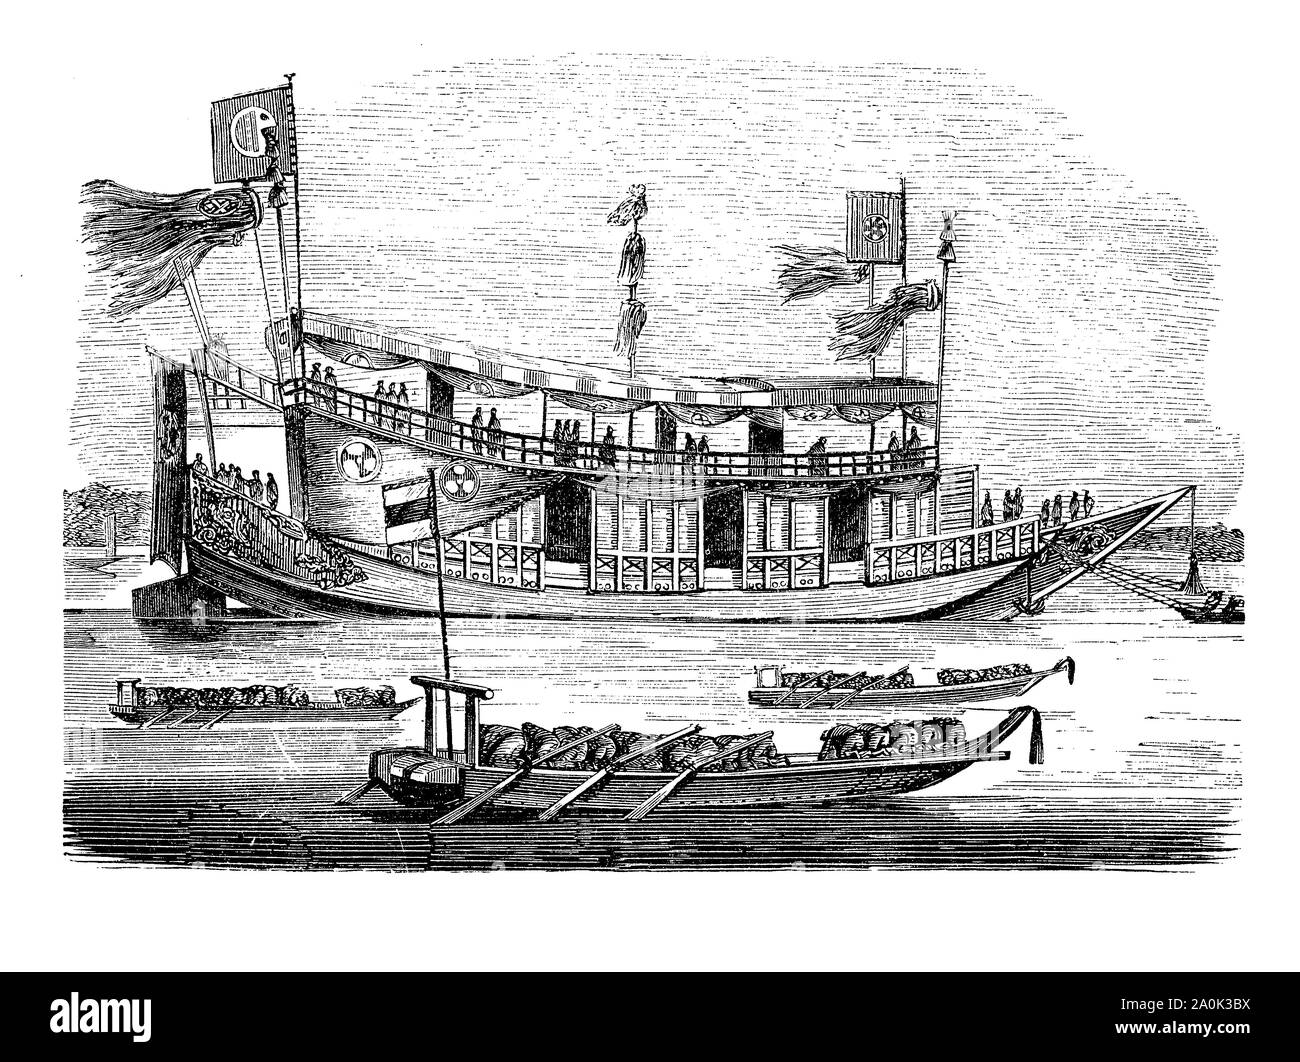 Navire état Shogun du 18e siècle, le dictateur militaire du Japon de facto du pays. Le navire était plus une forteresse flottante plutôt qu'un véritable navire de guerre utilisé dans des actions côtières Banque D'Images